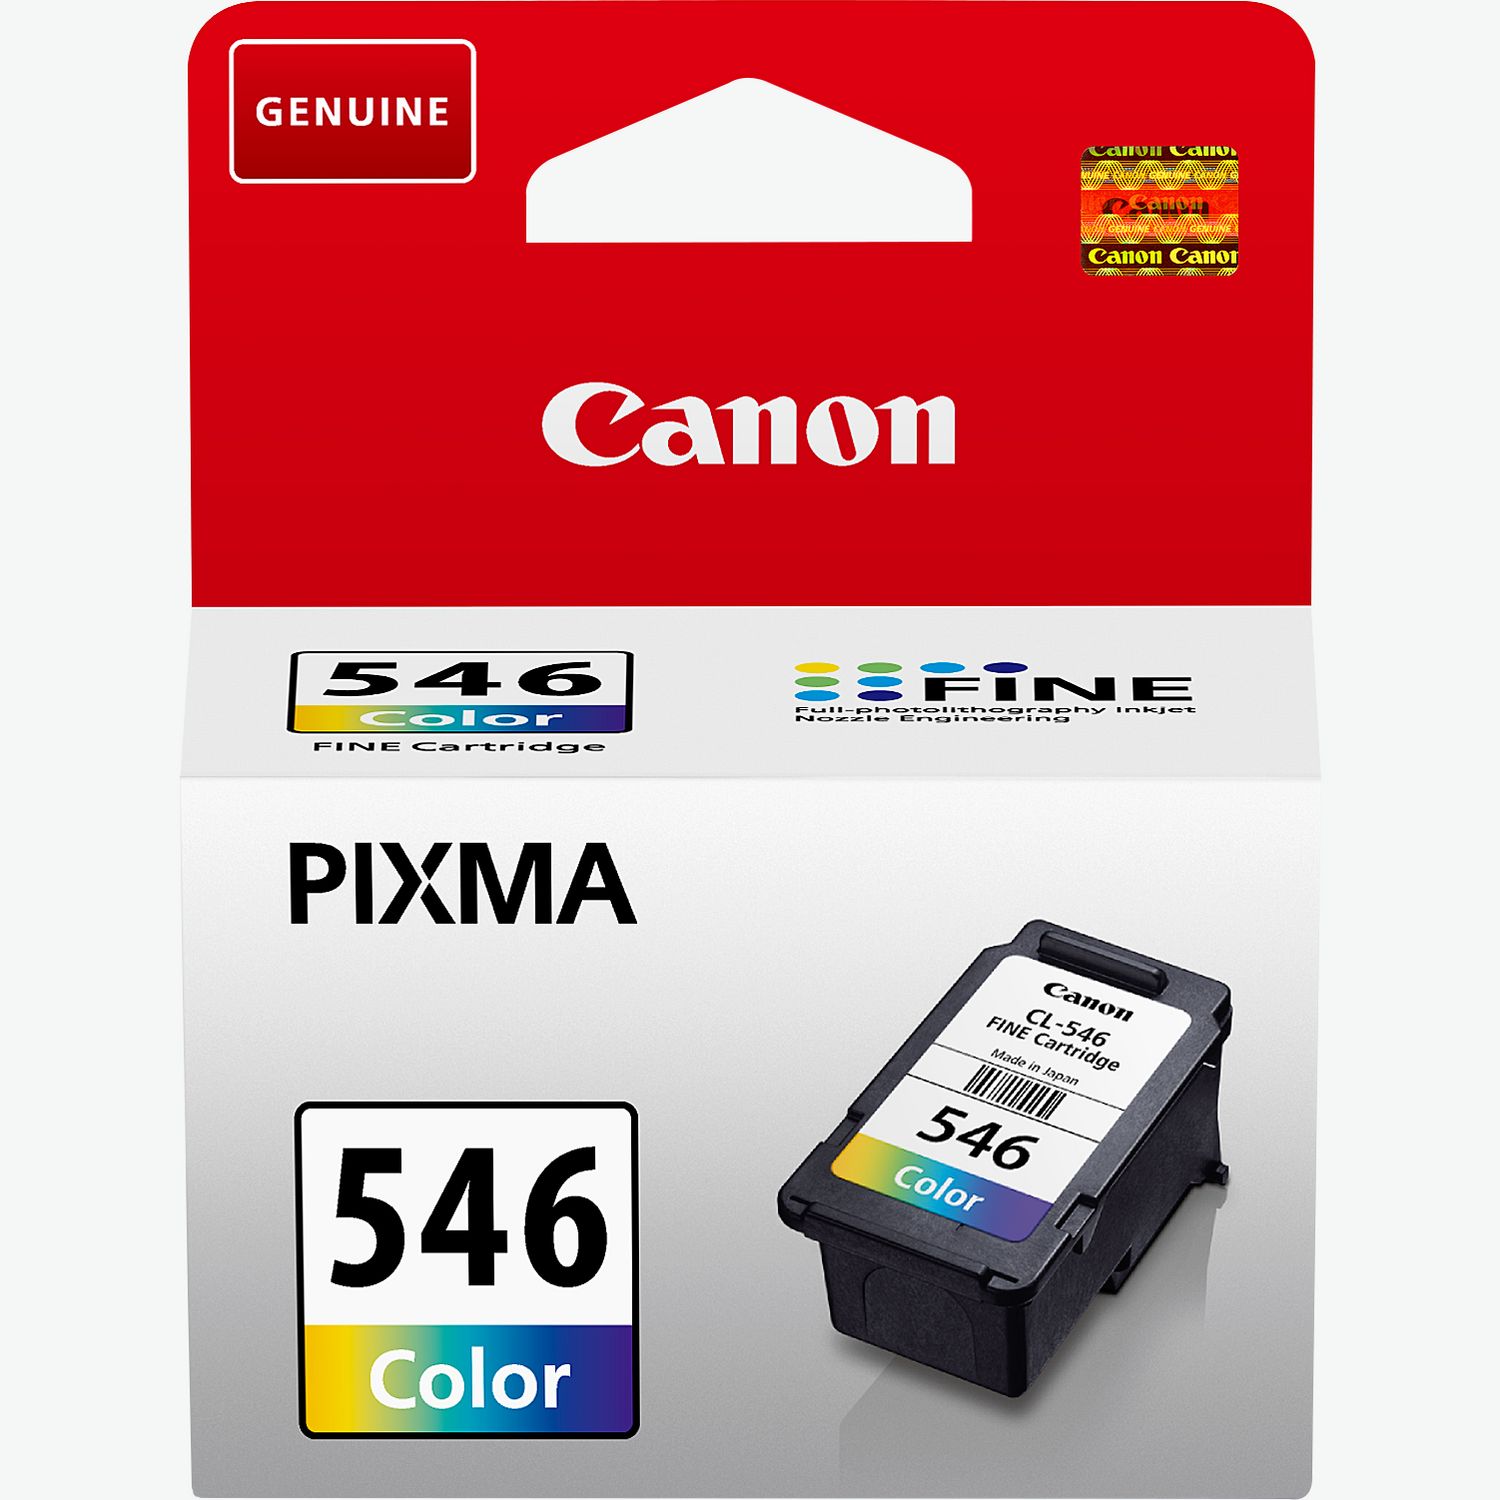 Buy Canon PIXMA TR4650 Wireless Colour All-in-One Inkjet Photo Printer,  Black — Canon Ireland Store